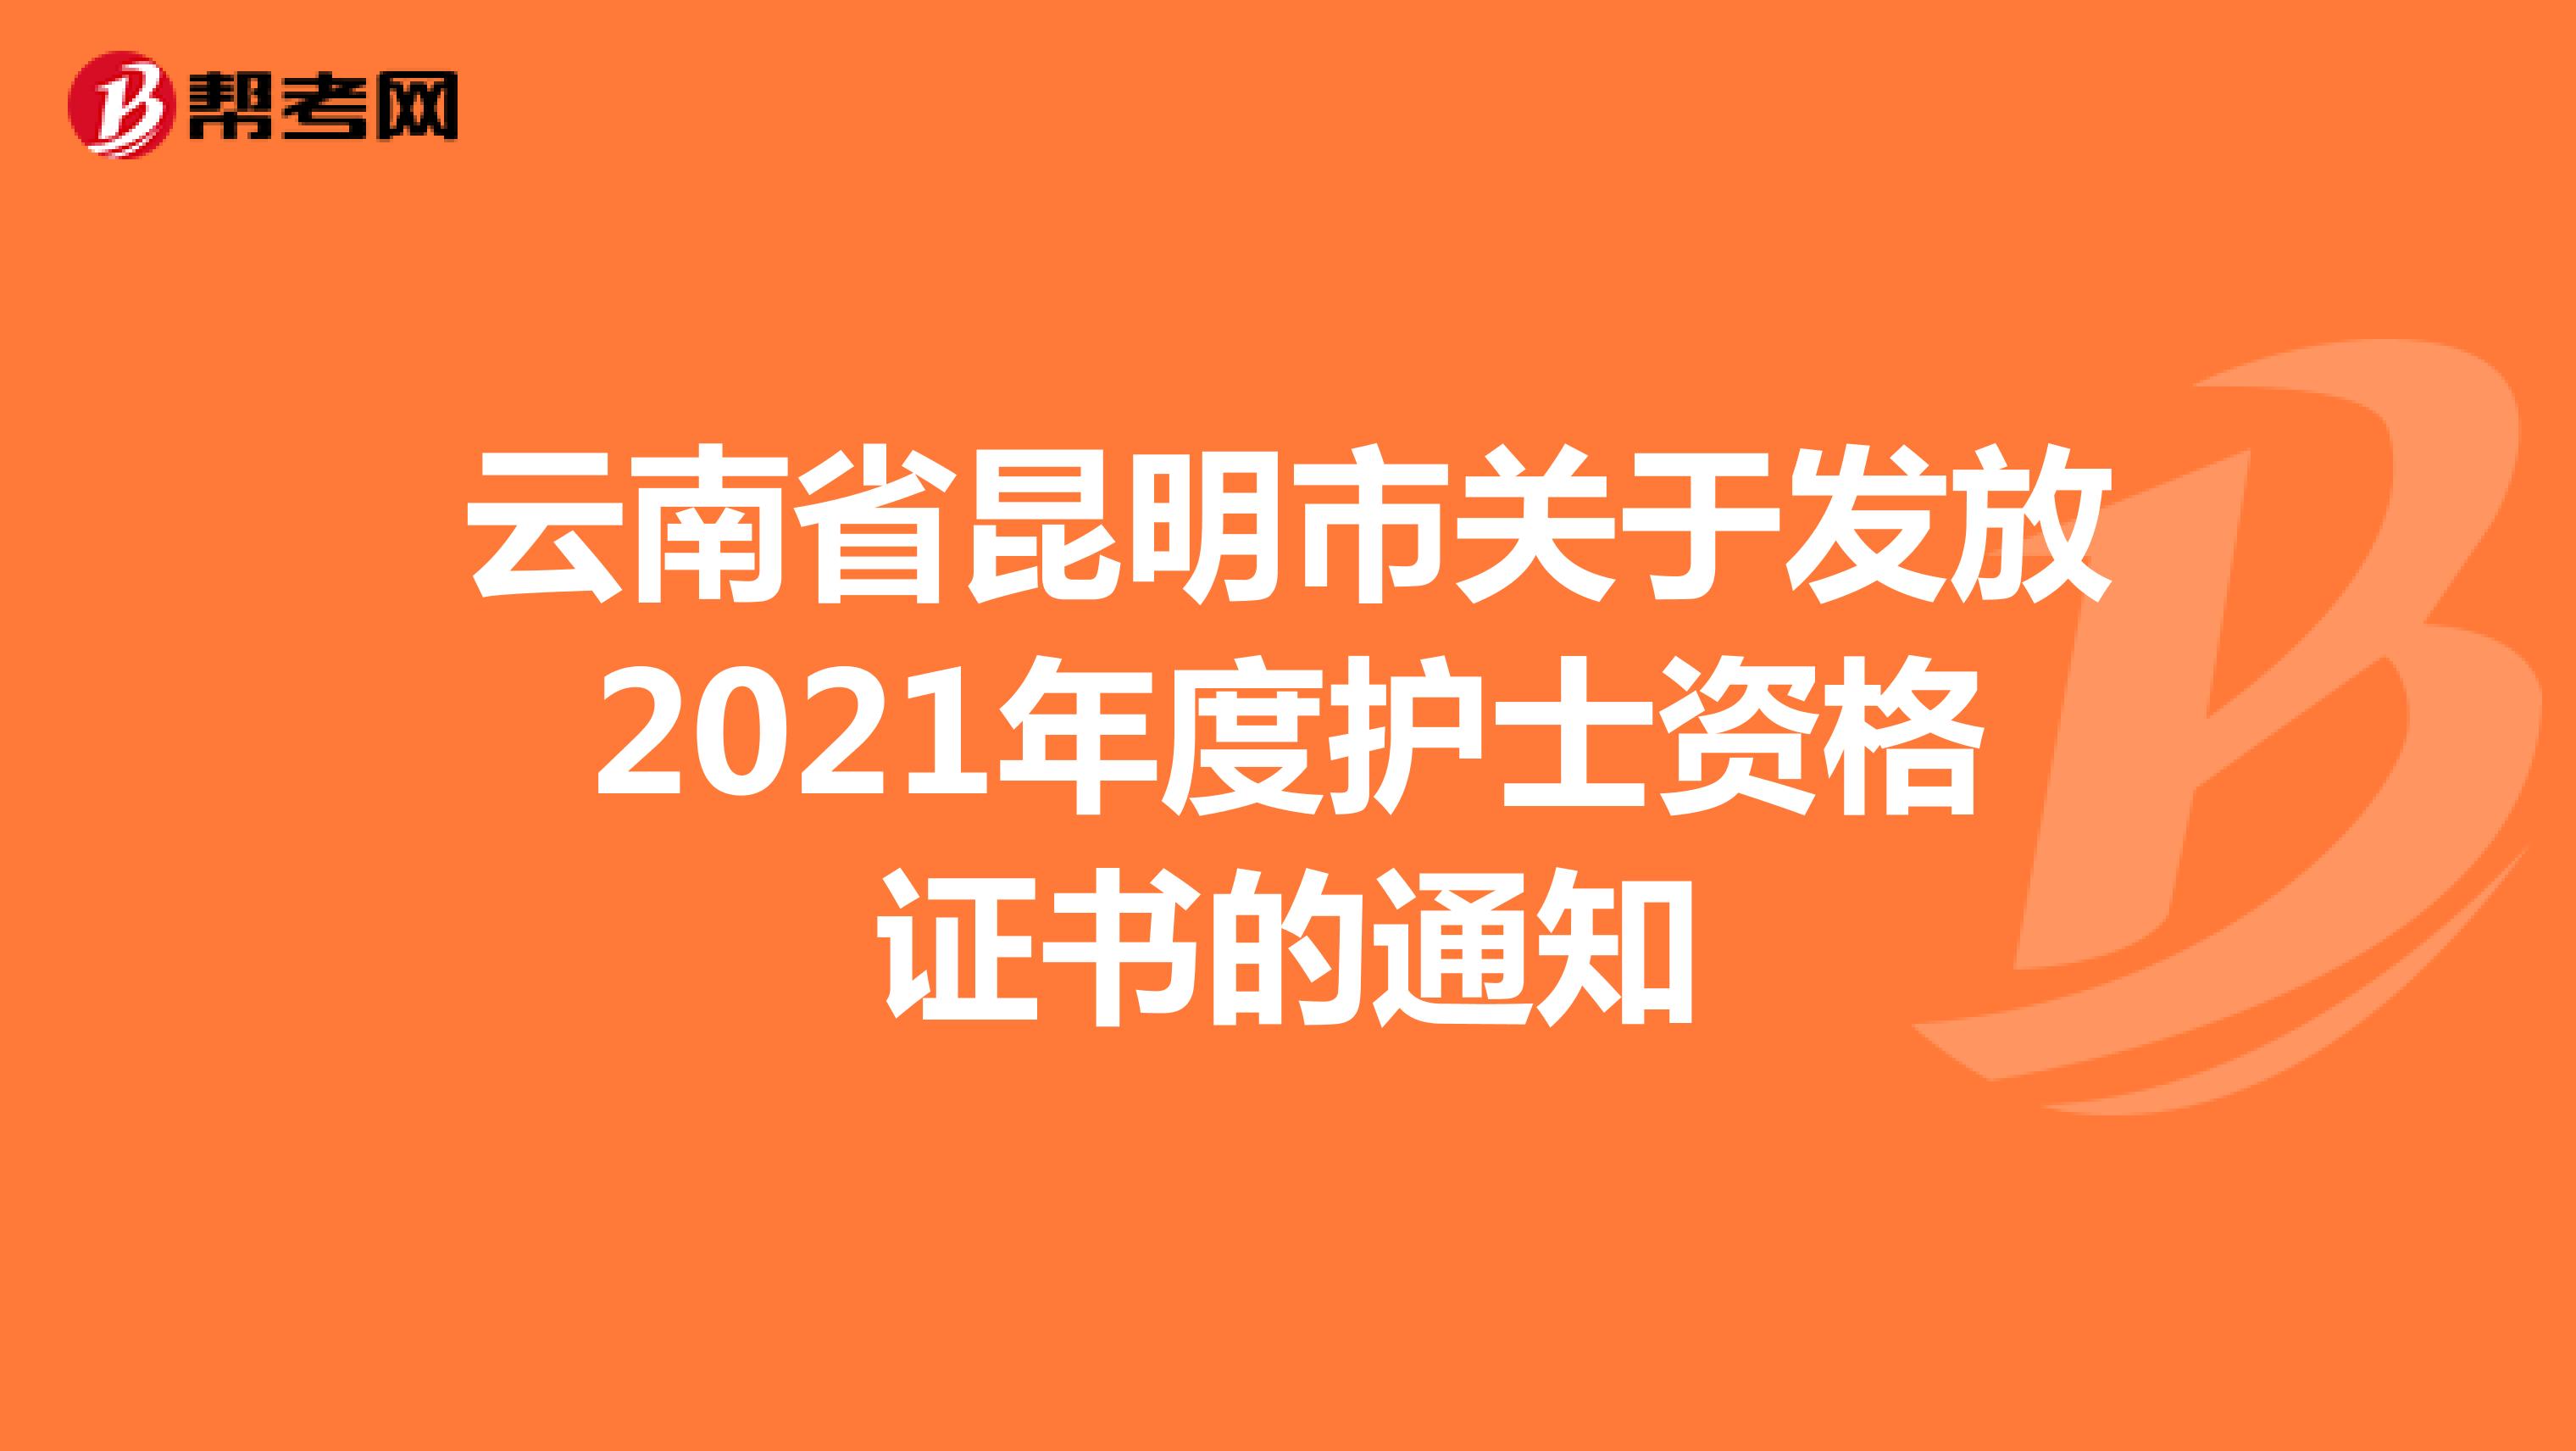 云南省昆明市关于发放2021年度护士资格证书的通知